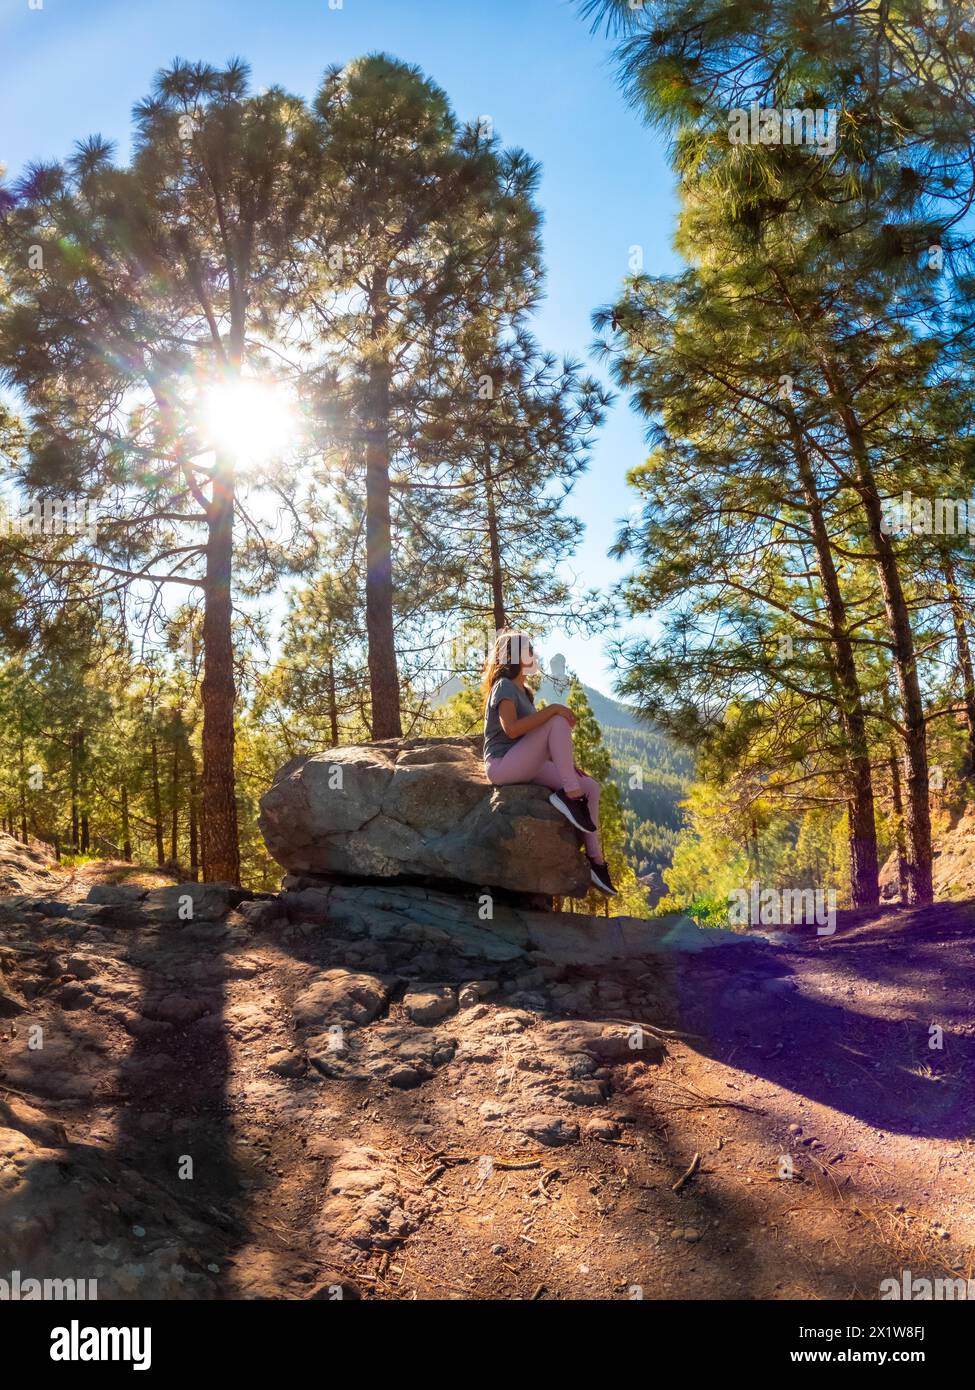 Una donna siede su una roccia in una foresta. Il sole splende su di lei, creando un'atmosfera calda e tranquilla Foto Stock